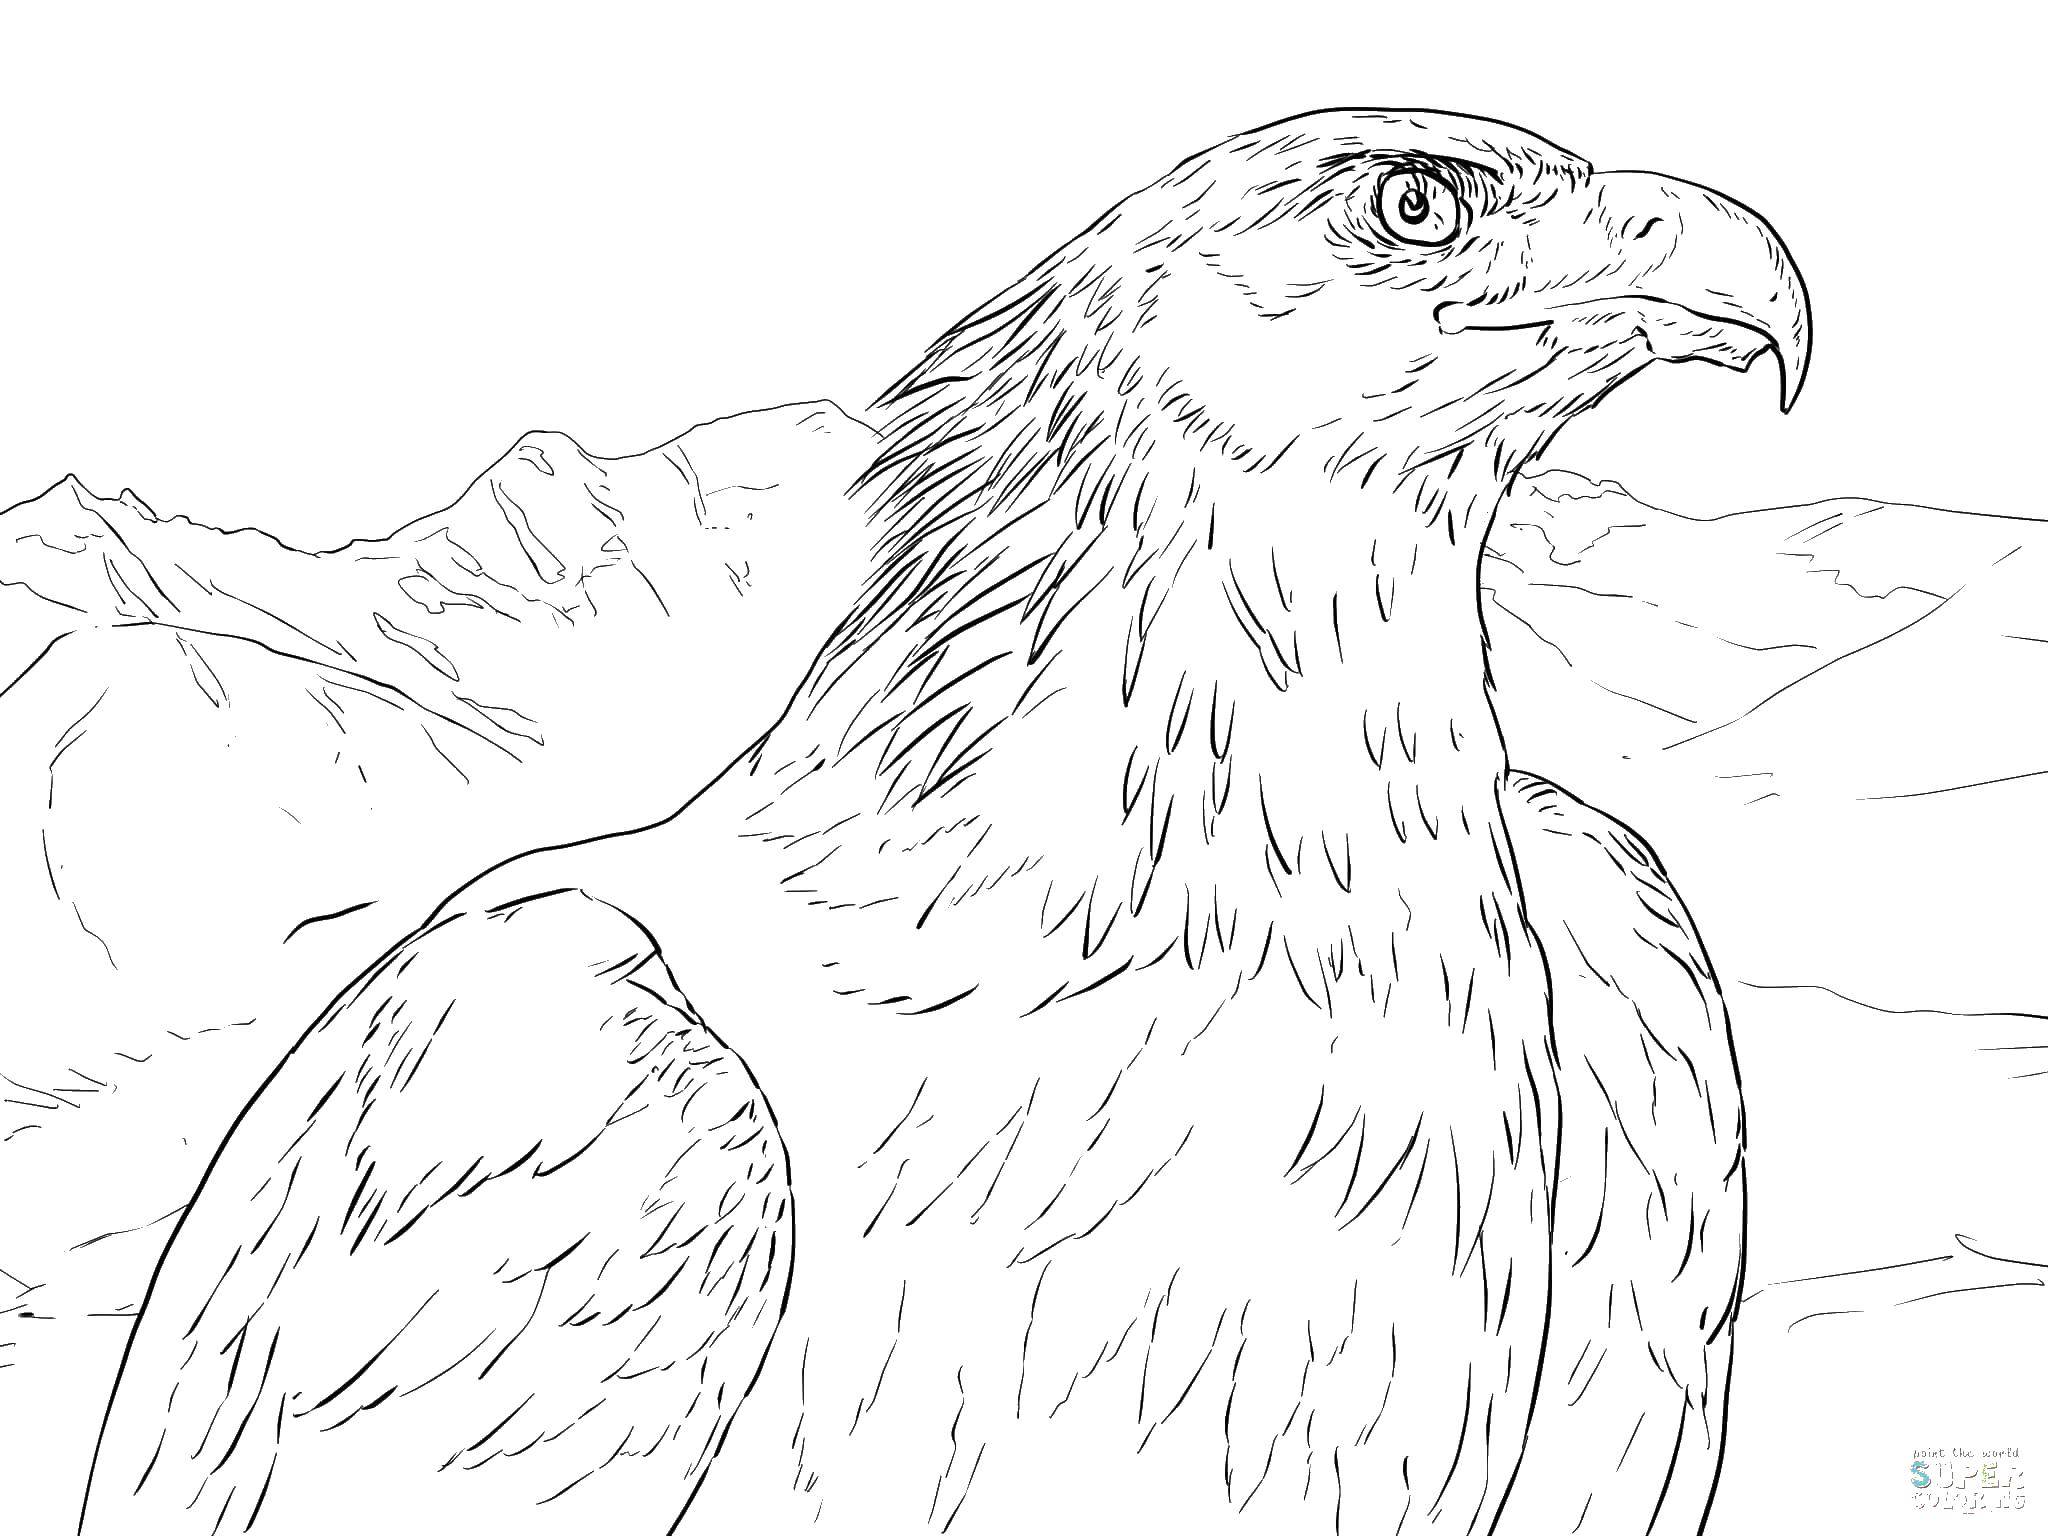 Coloring Mountain eagle. Category birds. Tags:  birds, eagles.